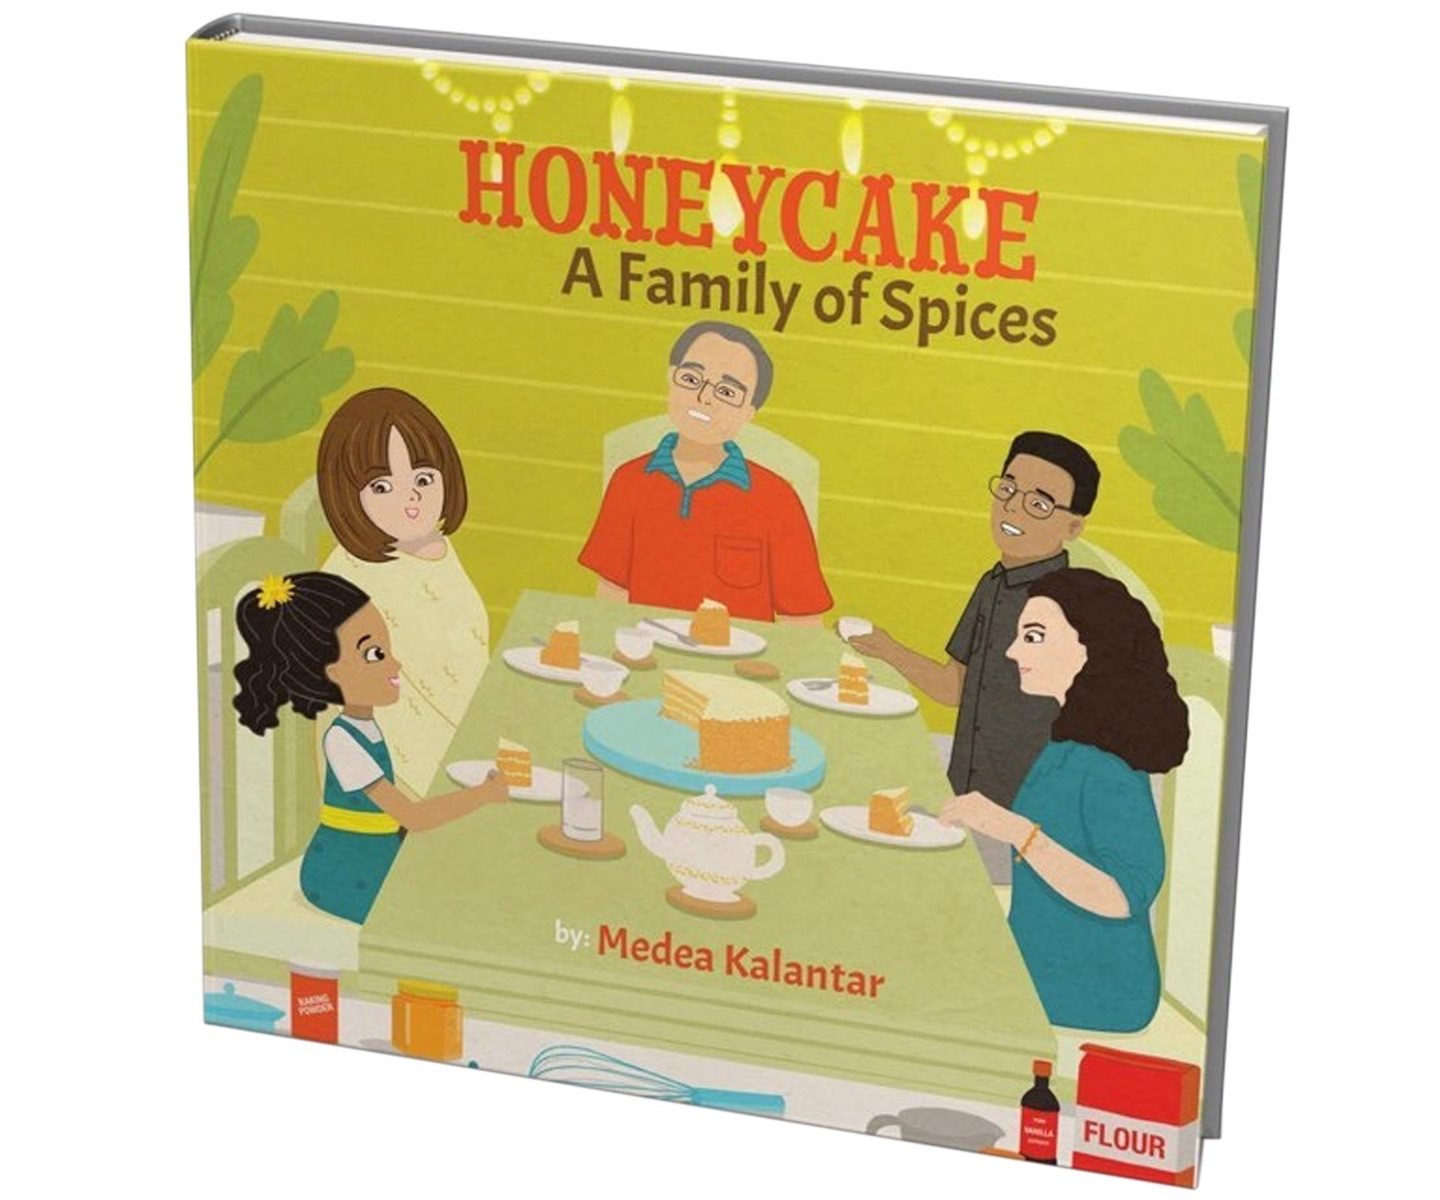 Book 1: Honeycake - A Family of Spices